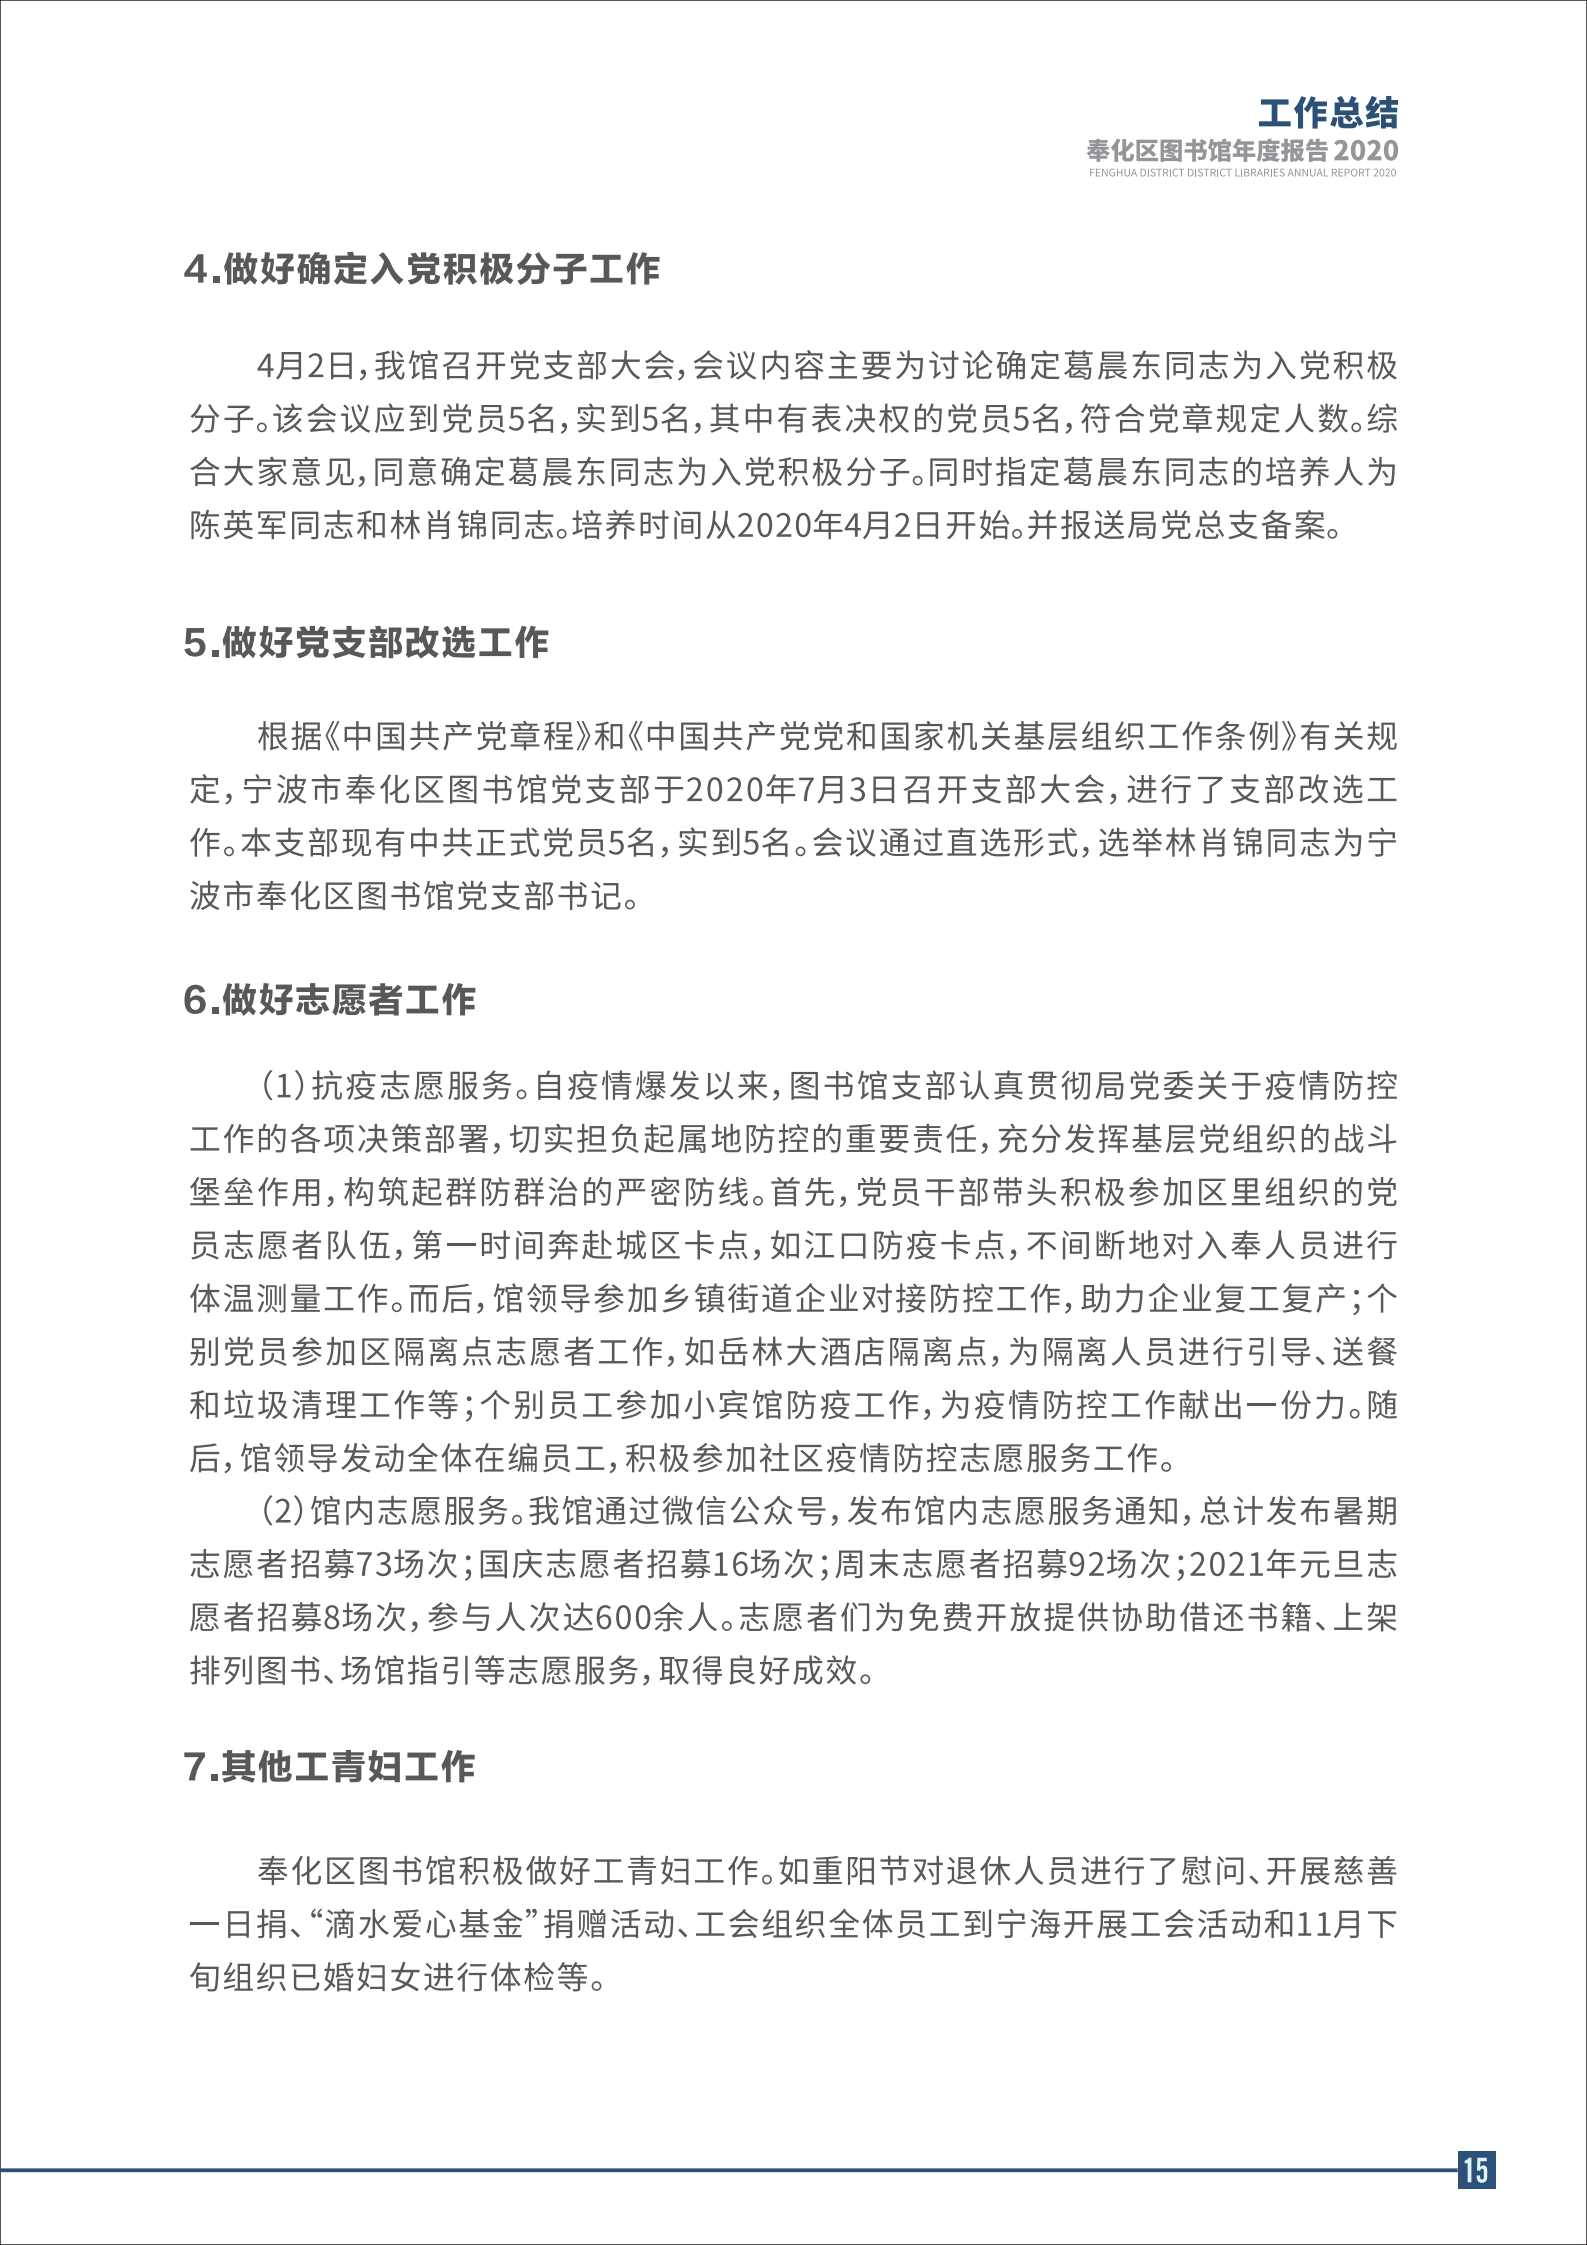 宁波市奉化区图书馆2020年年度报告 终稿_15.png